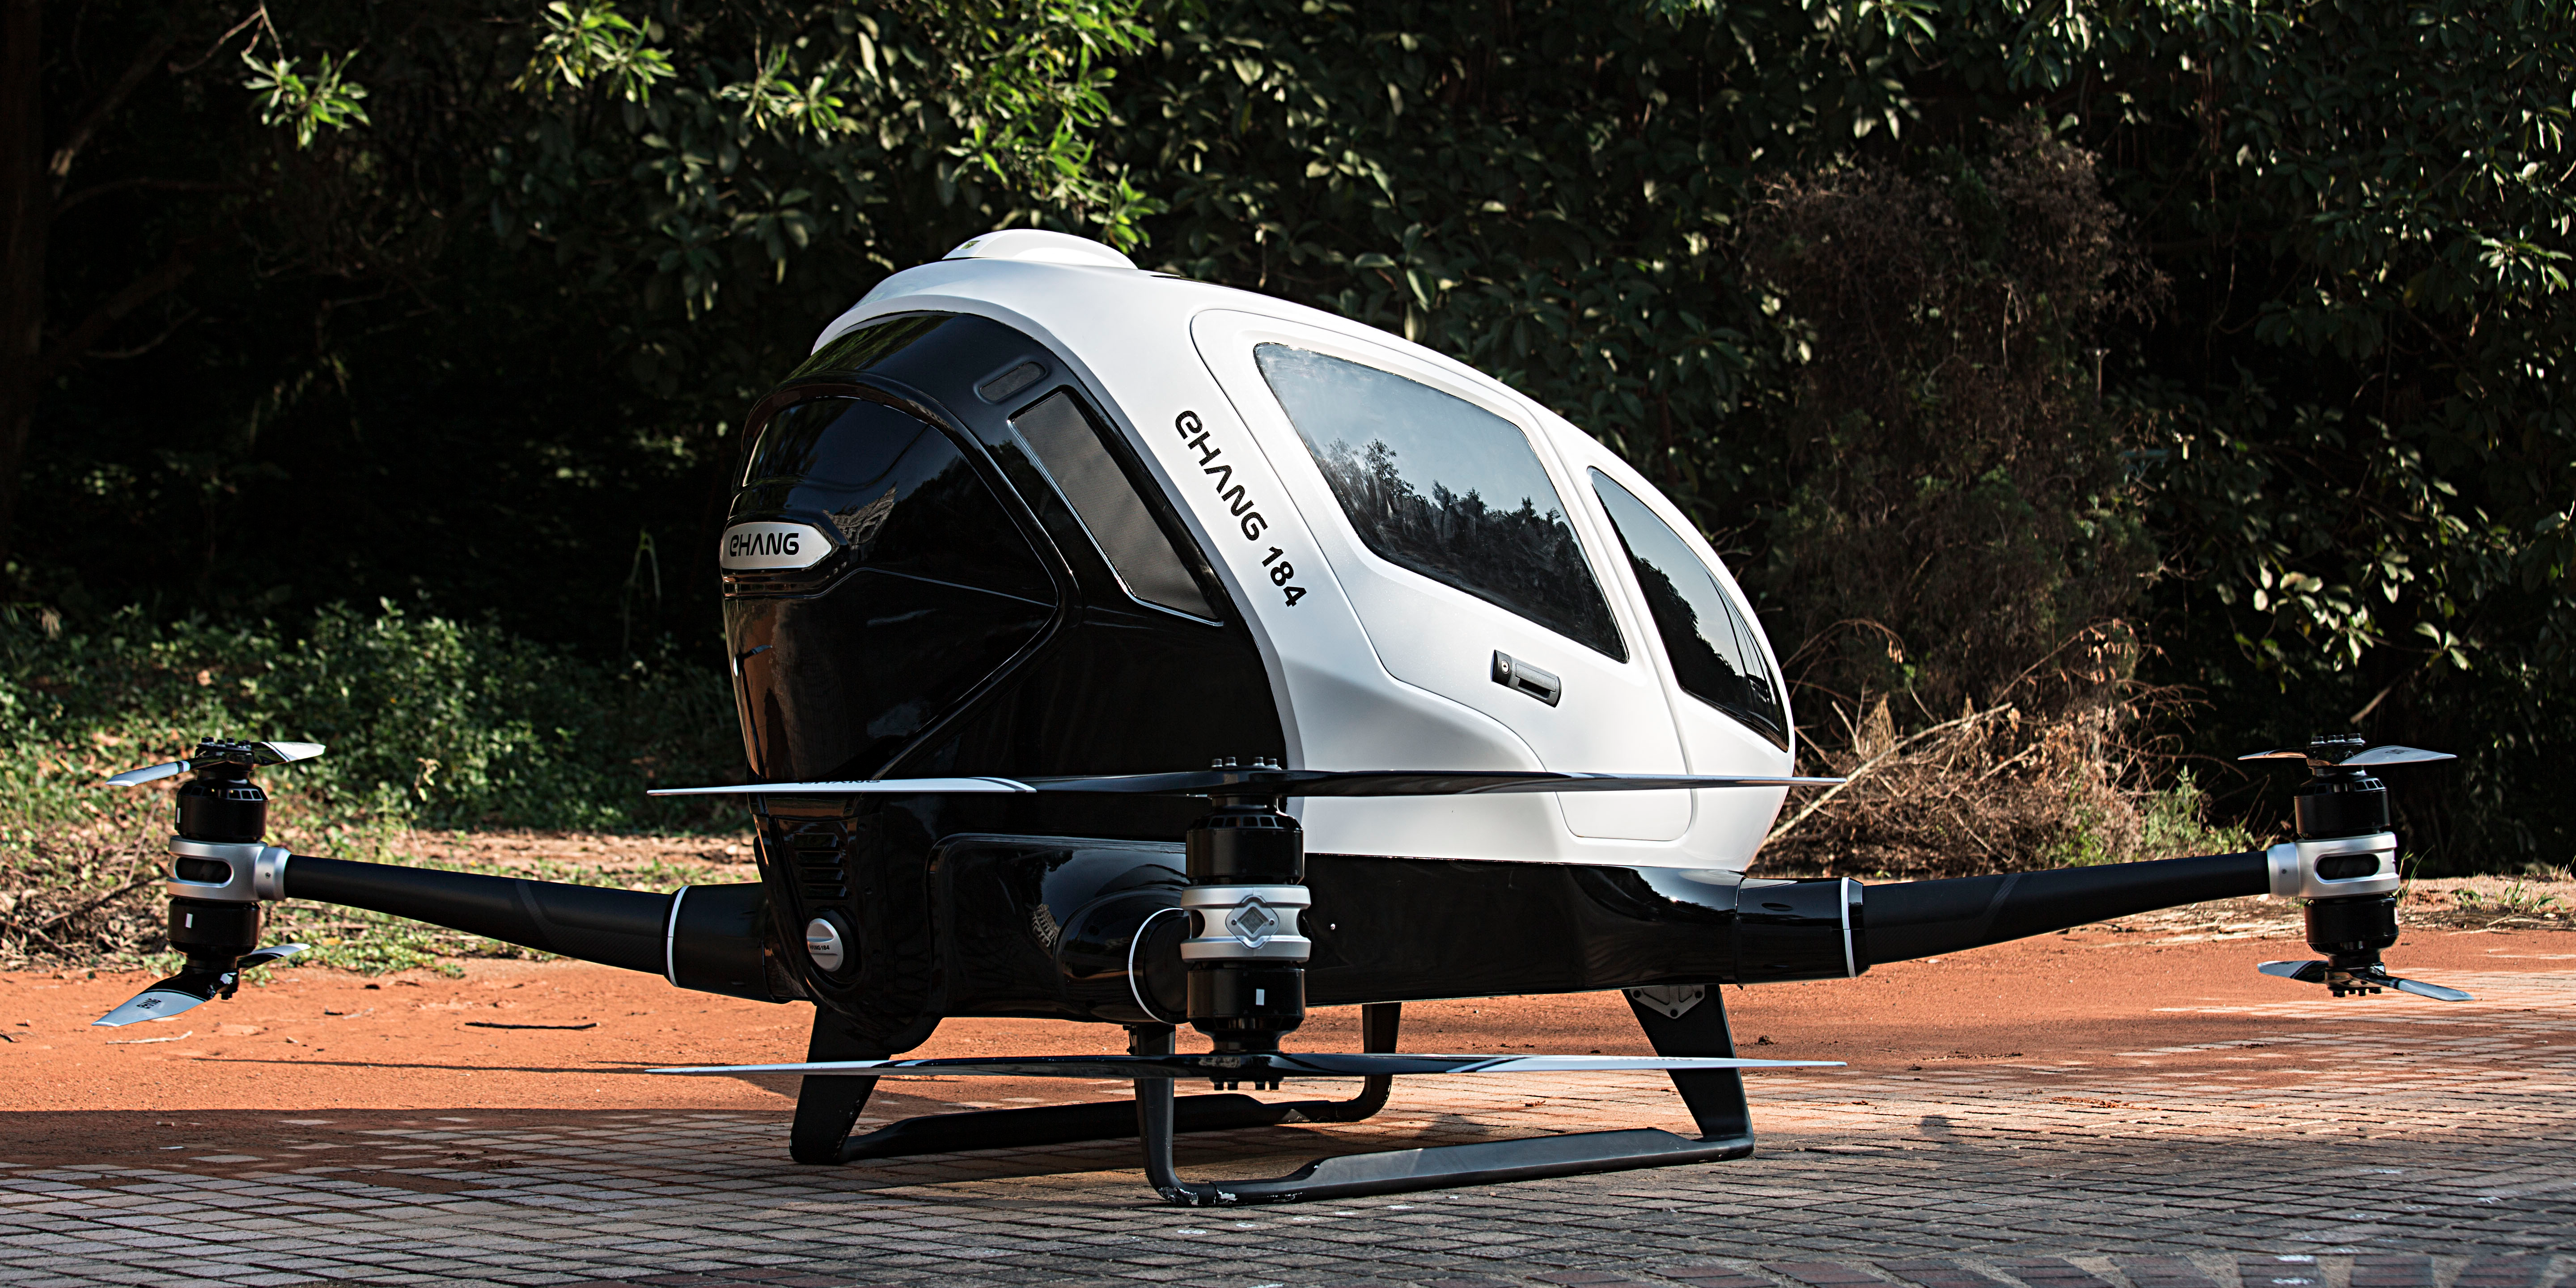 EHang 184 drone electric autonomous vehicle